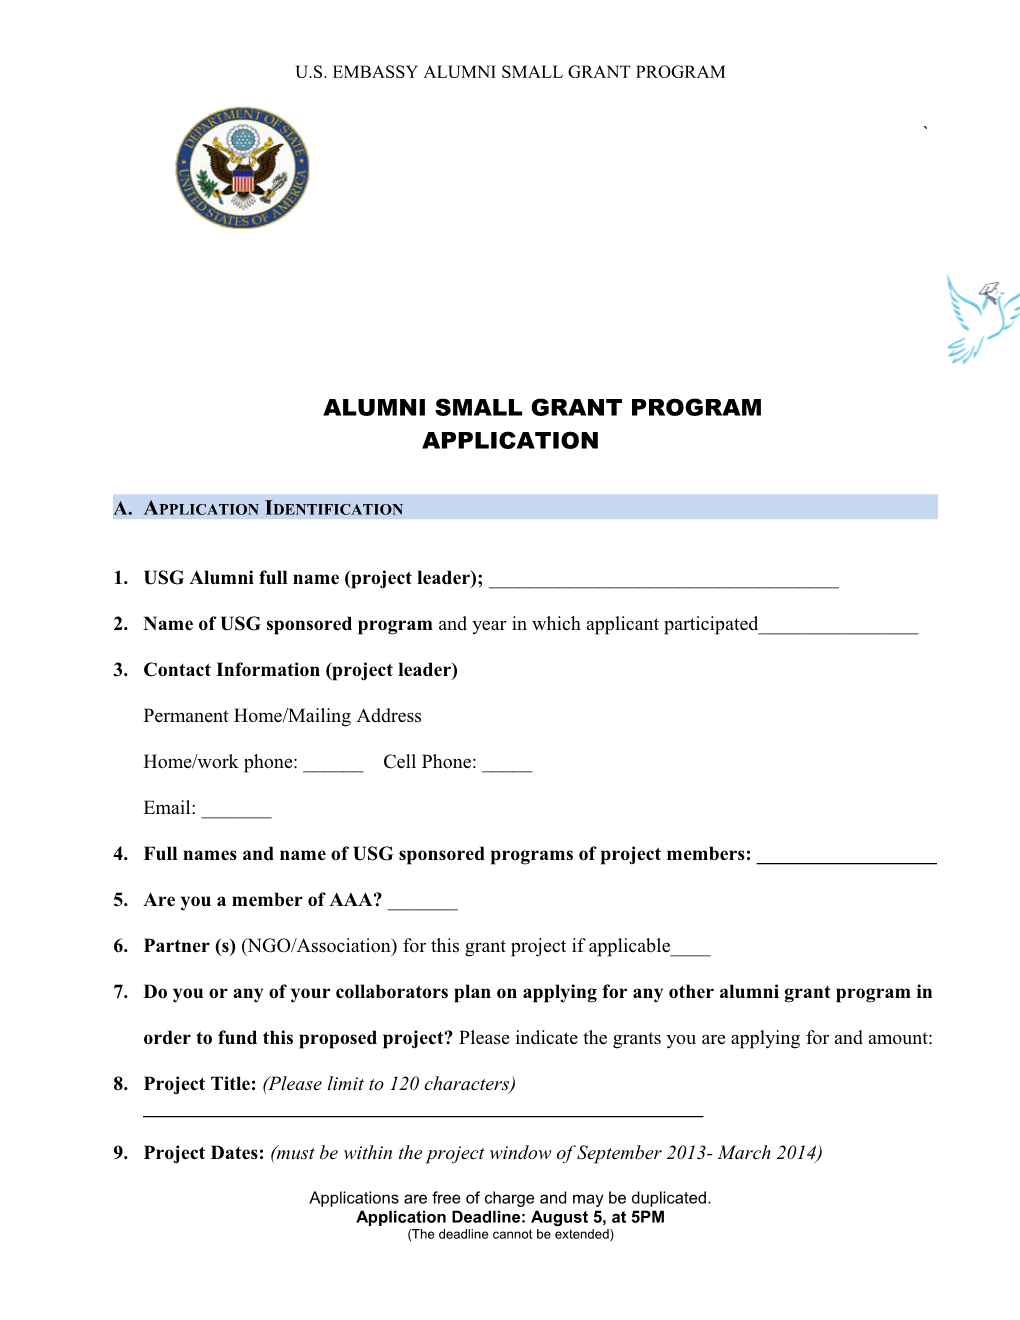 Alumni Small Grant Program